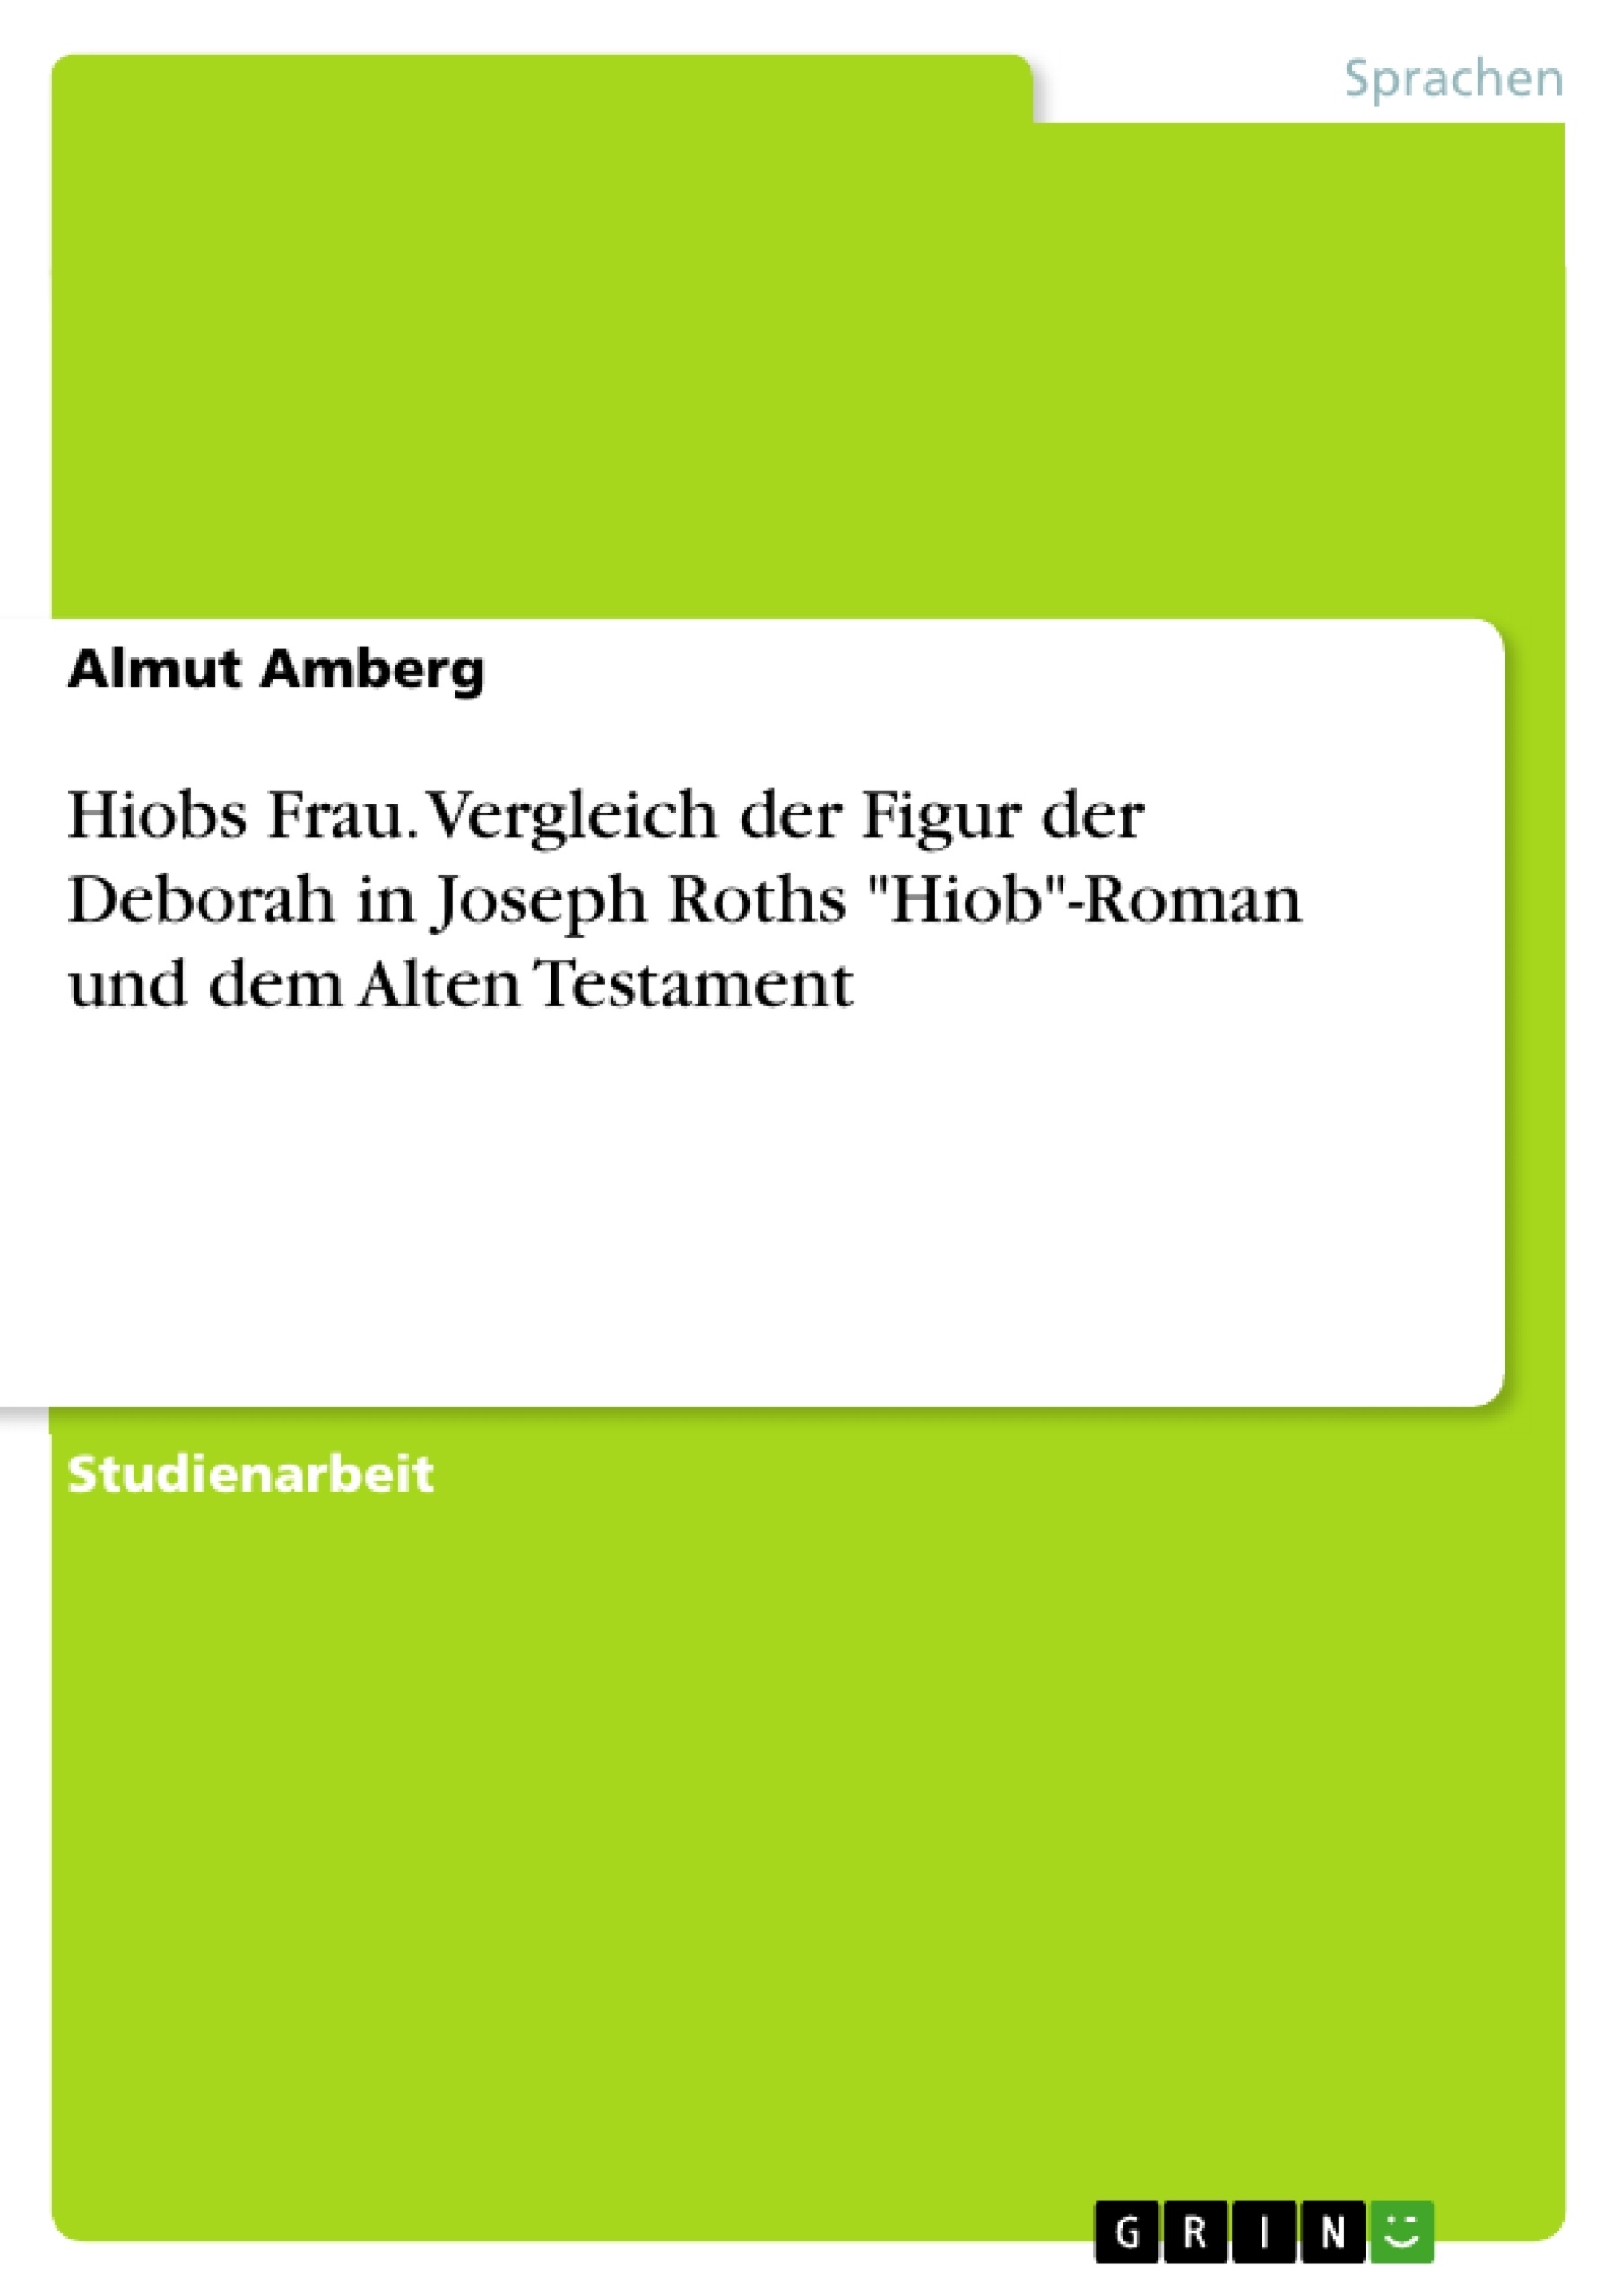 Title: Hiobs Frau. Vergleich der Figur der Deborah in Joseph Roths "Hiob"-Roman und dem Alten Testament